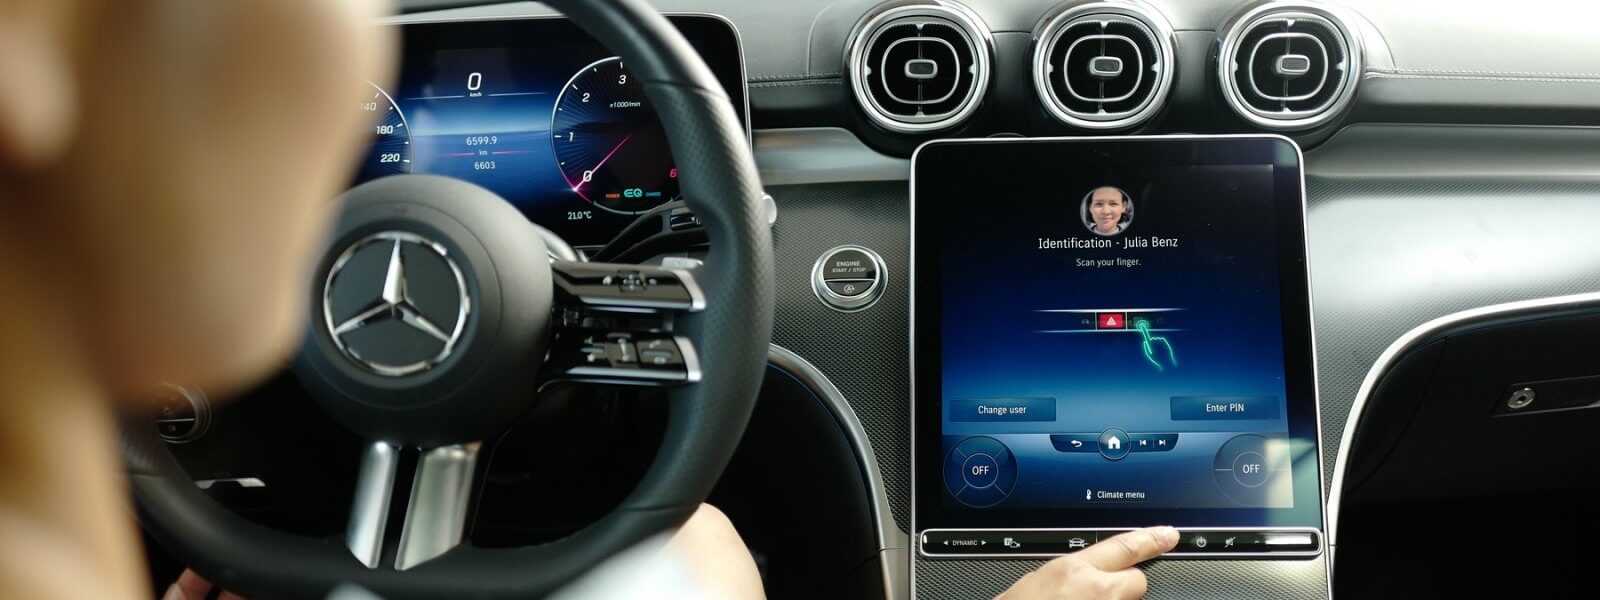 Mercedes double sa technologie d’abonnement avec un nouveau système de paiement